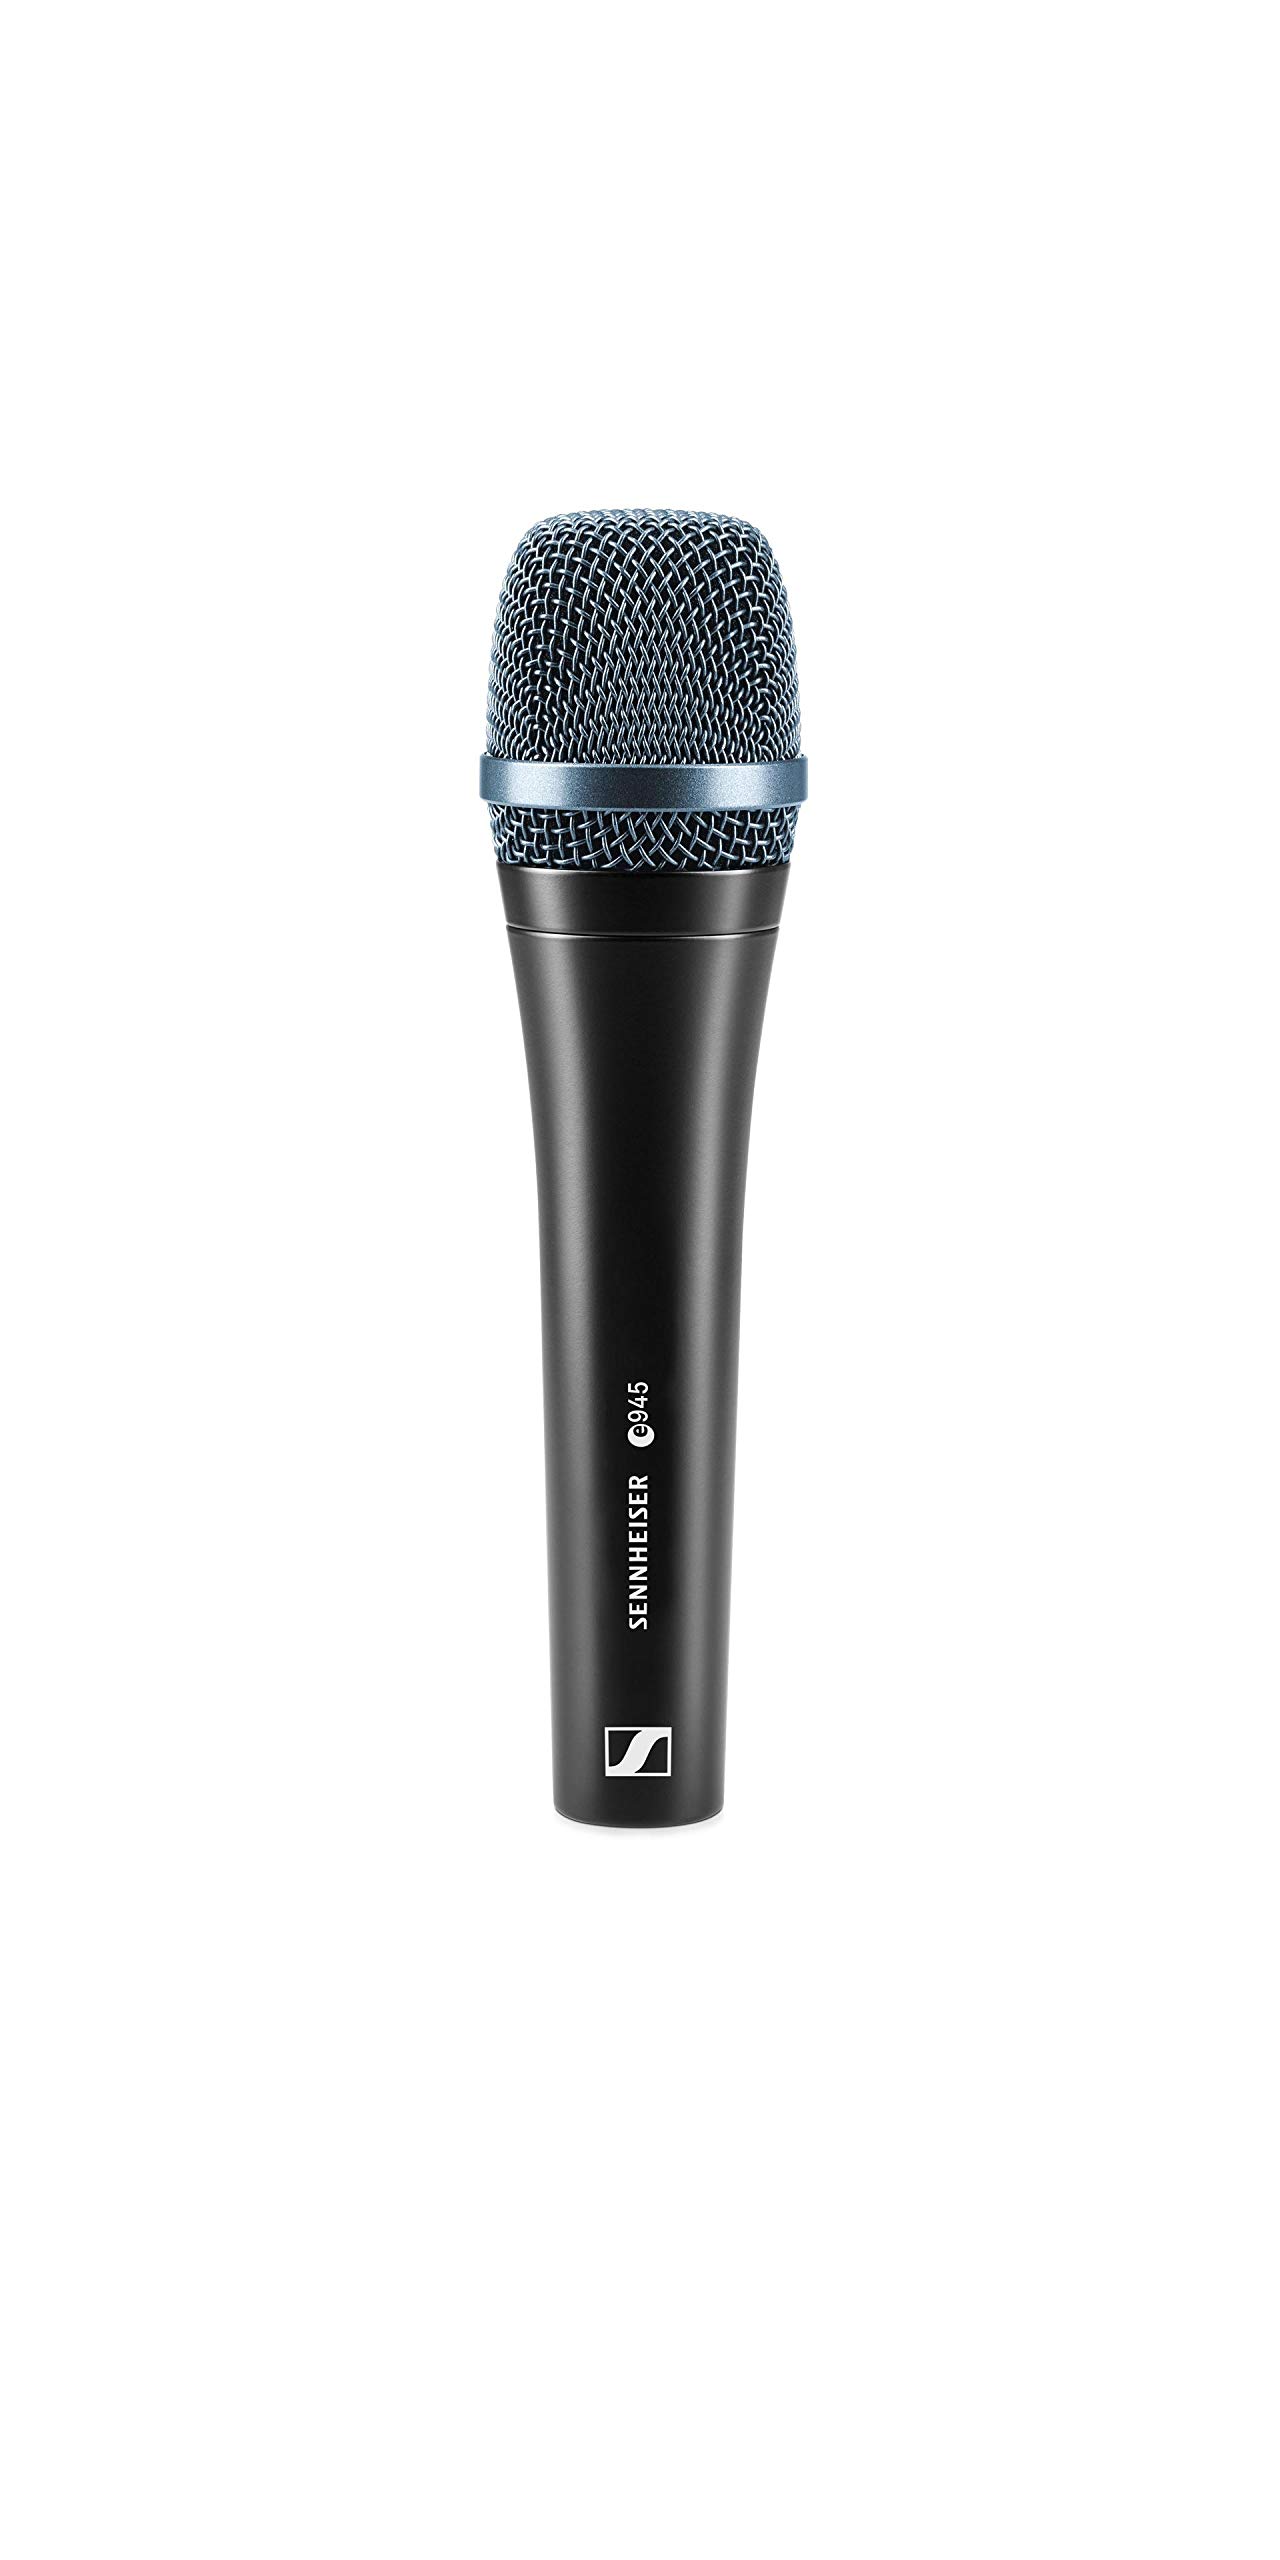 Sennheiser Pro Audio Профессиональный динамический суперкардиоидный вокальный микрофон E 945